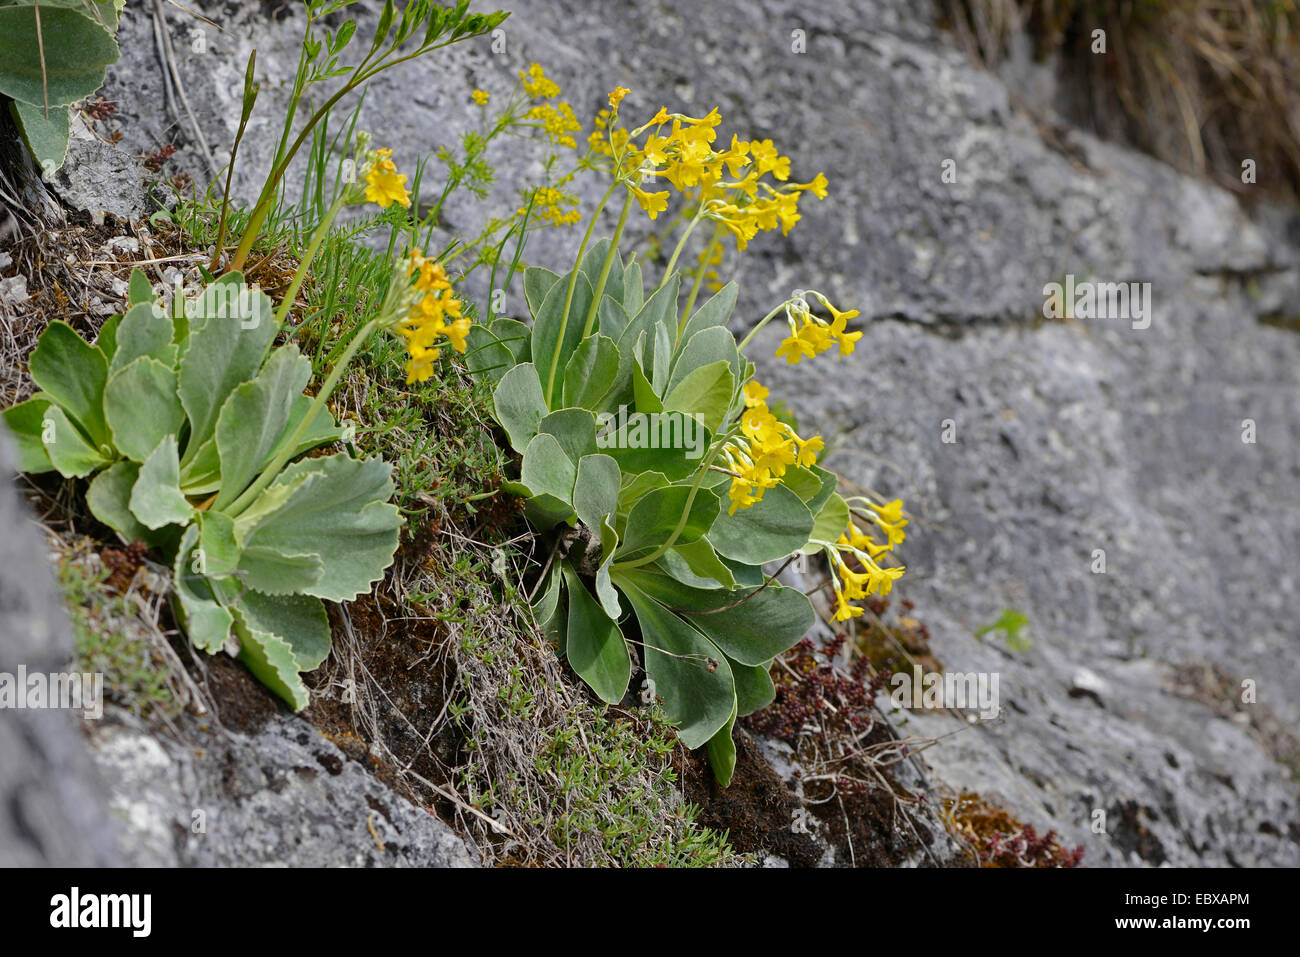 Miller polverosi, giardino padiglione auricolare (Primula padiglione auricolare), fioritura su una roccia, Austria, la Stiria Foto Stock